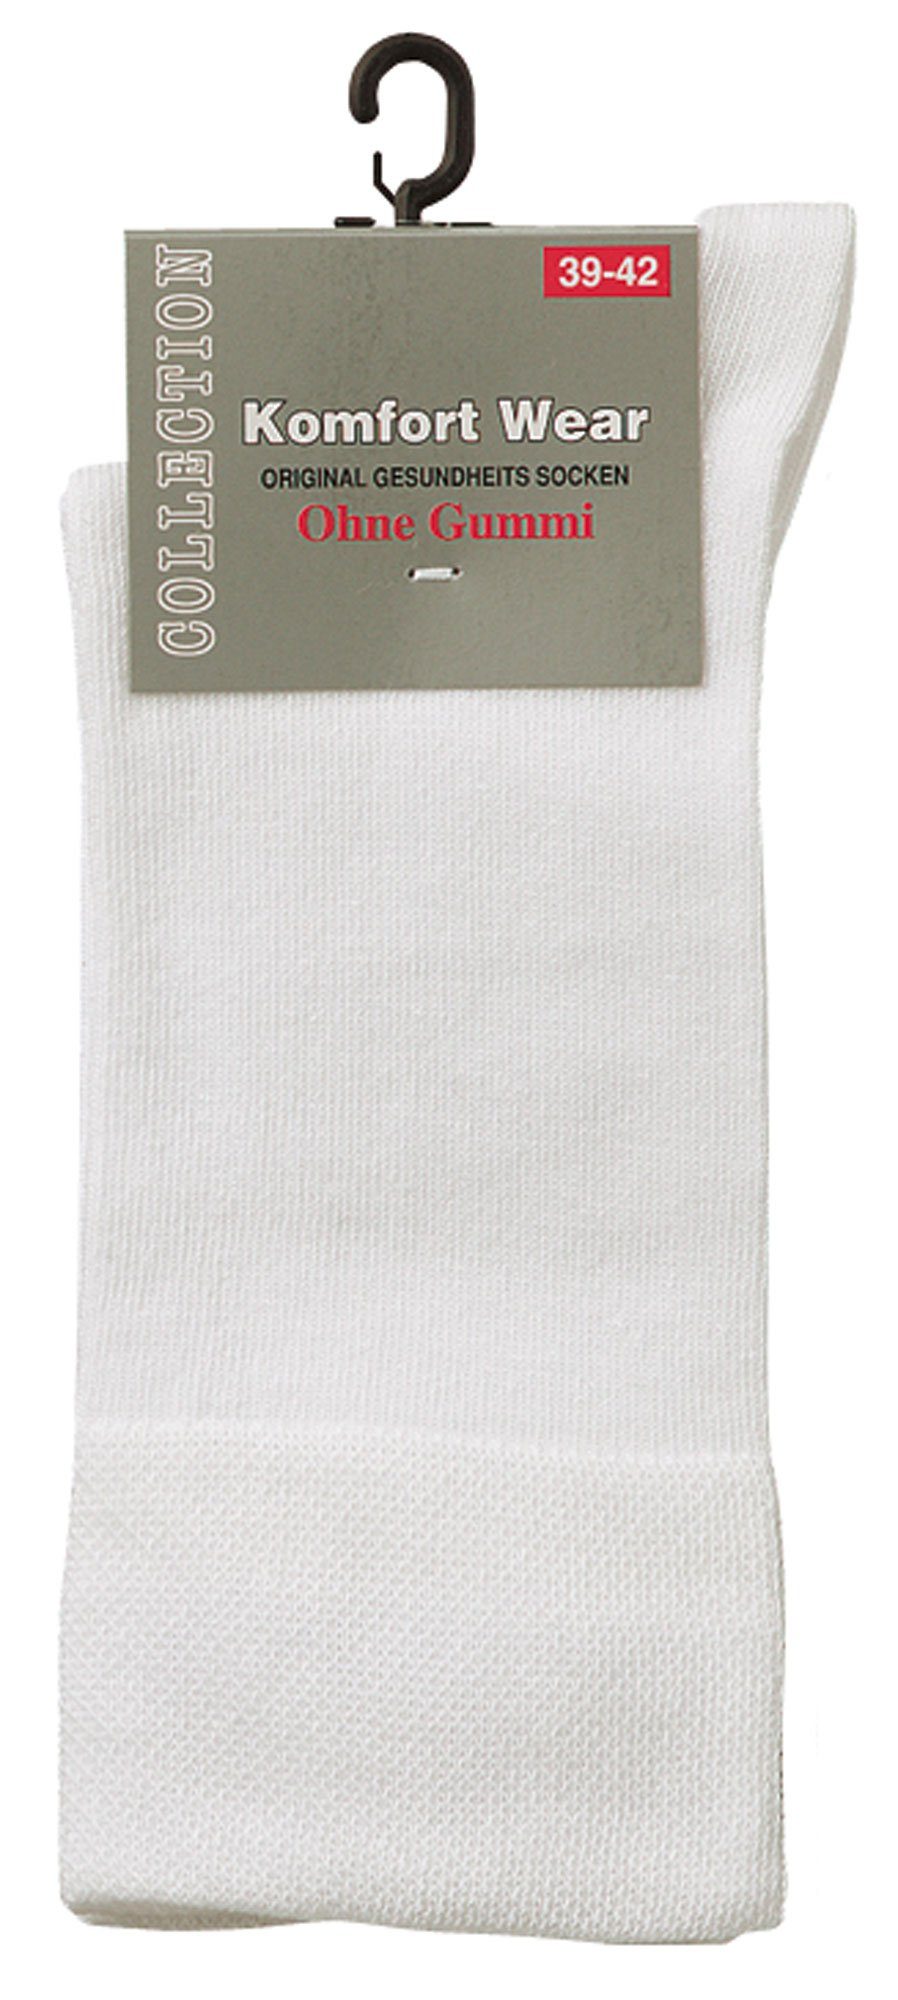 Baumwoll-Socken mit Weiß Basicsocken Komfort Piqué-Bund 6 FussFreunde breitem Paar